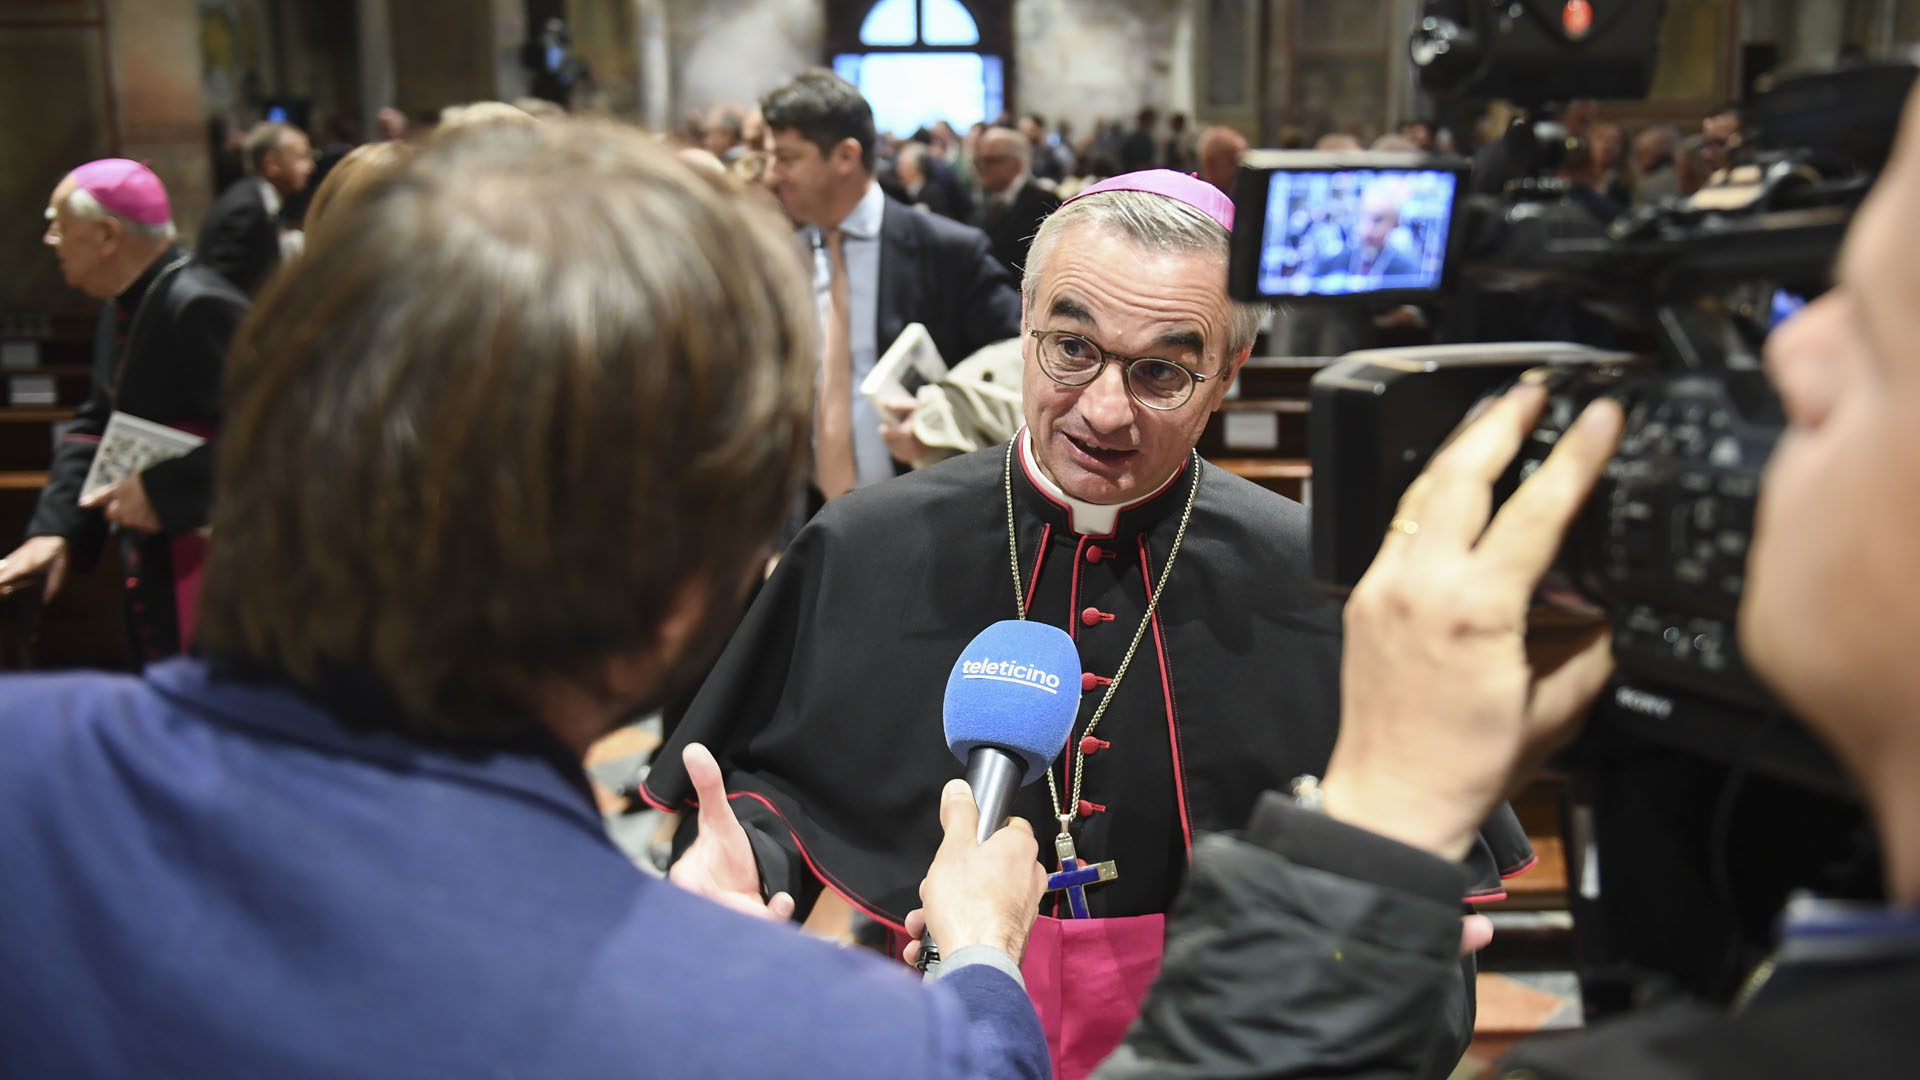 Lugano le 13 octobre 2017. Mgr Lazzeri, évêque de Lugano, a répondu aux questions des journalistes. | © Diocèse de Lugano